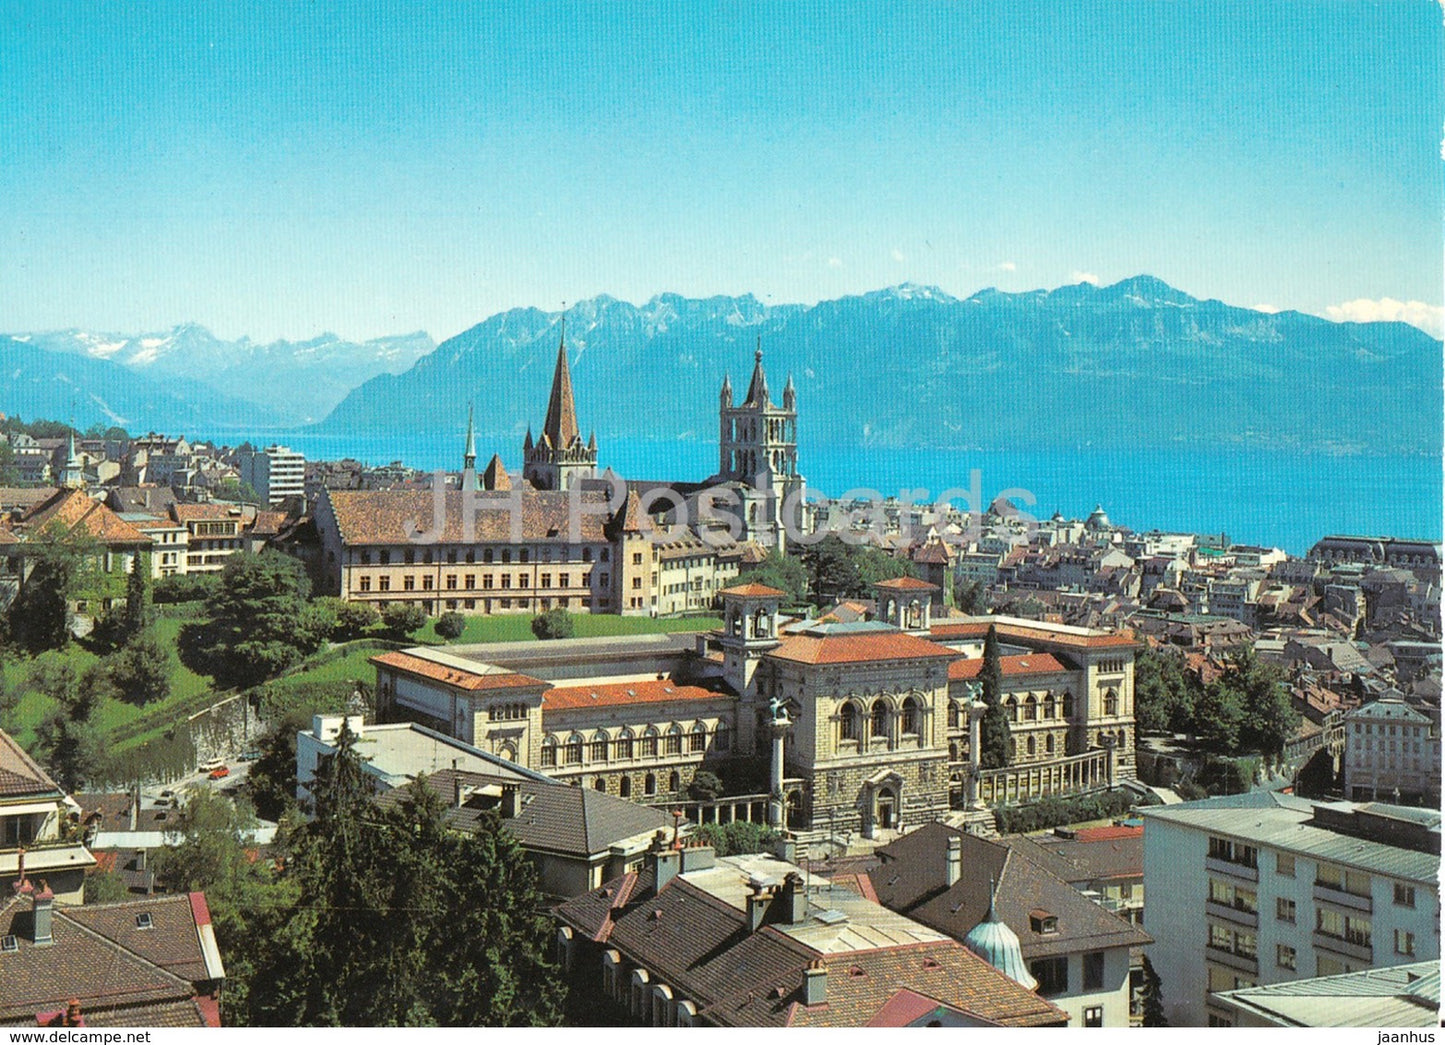 Lausanne - Le Palais de Rumine - la Cathedrale - Le Lac Leman - les Alpes de Savoie - Switzerland - unused - JH Postcards